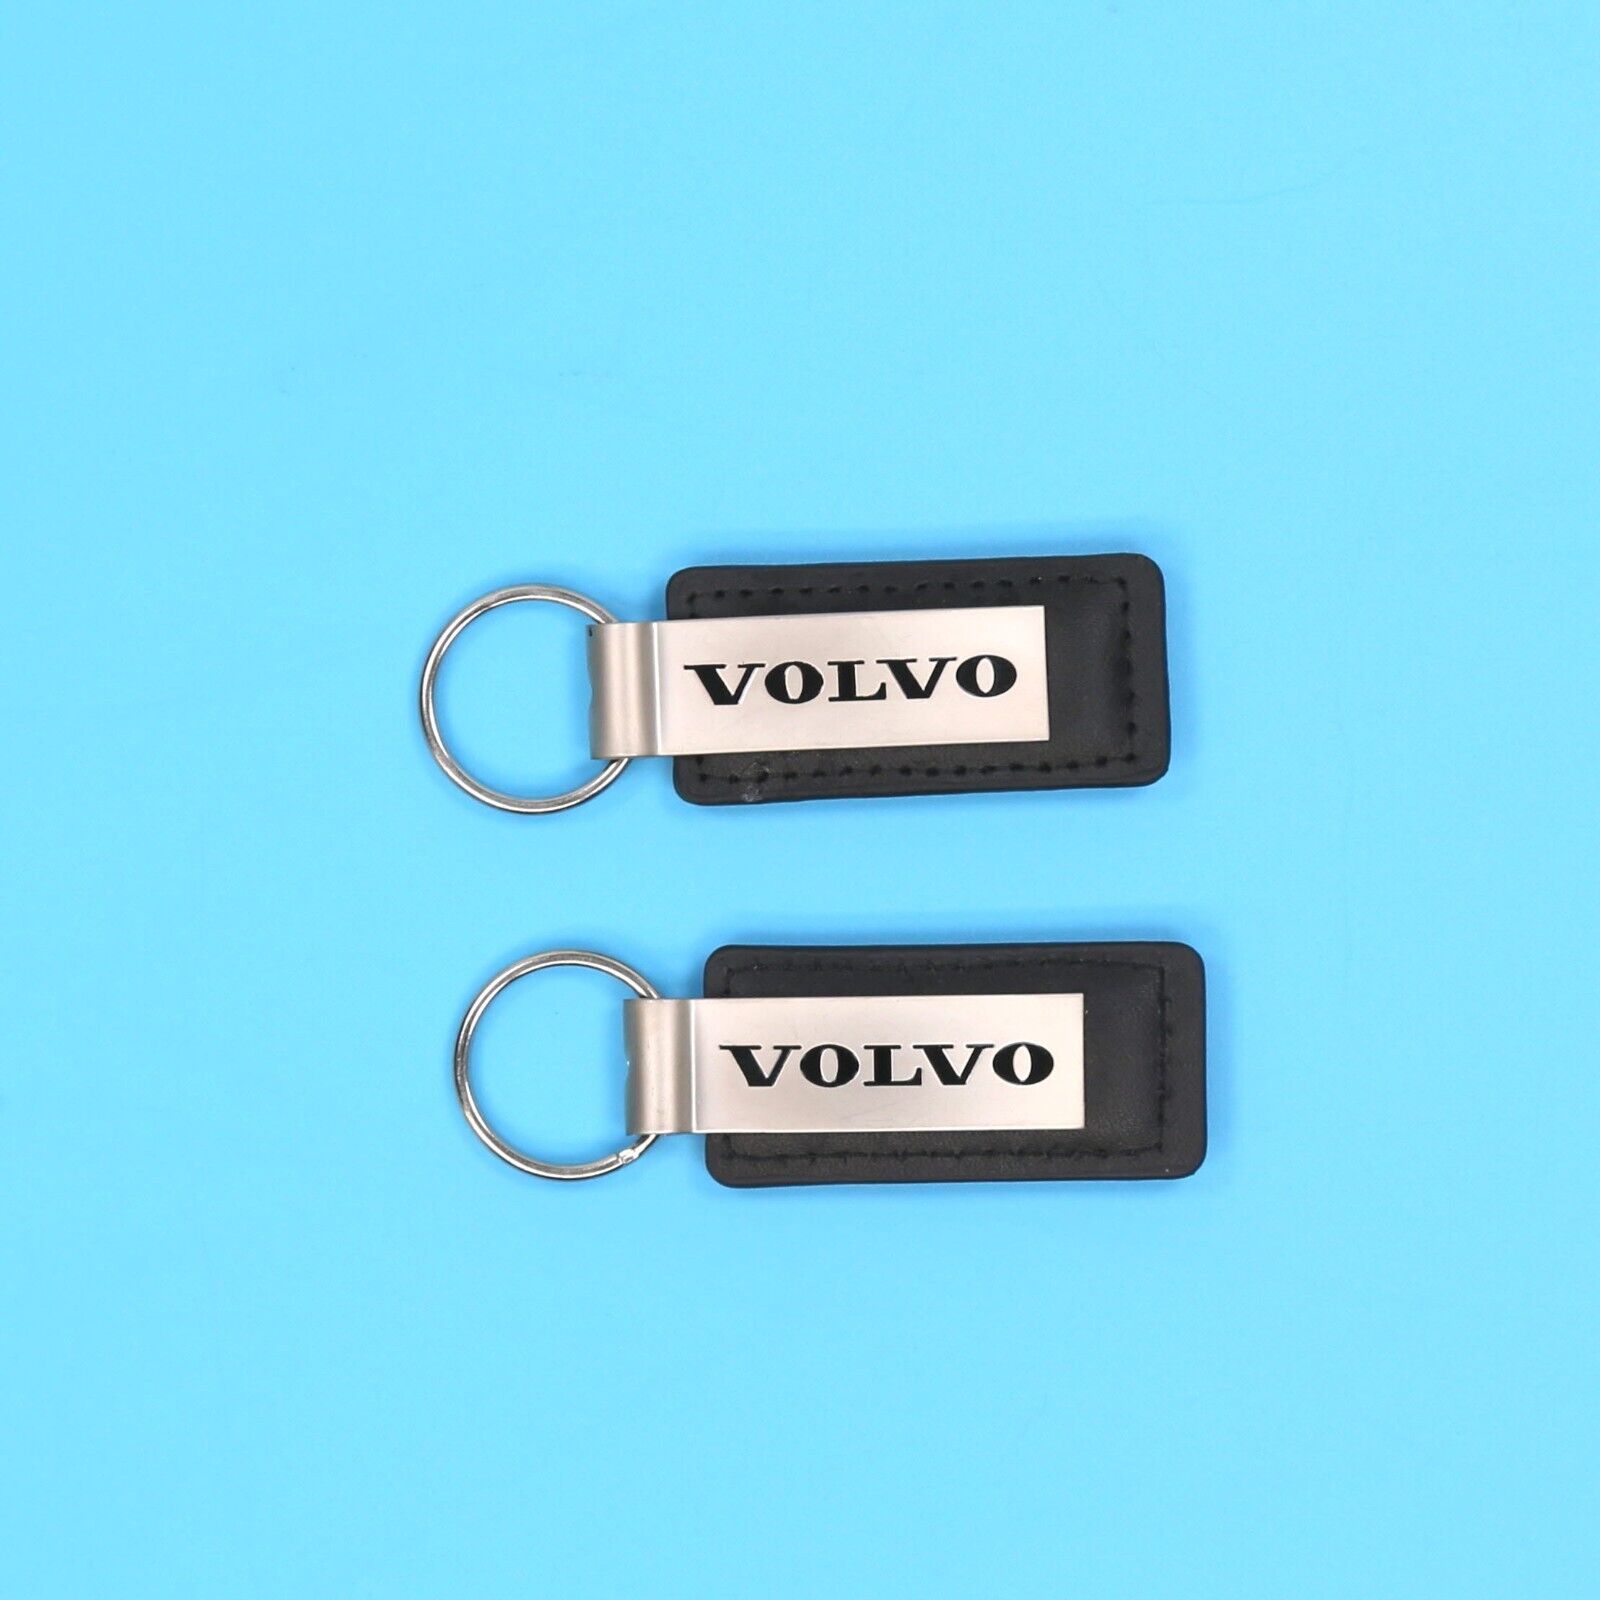 2 Genuine Volvo Stainless Steel Keychain Ring Dealership FINDLAY VOLVO LAS VEGAS